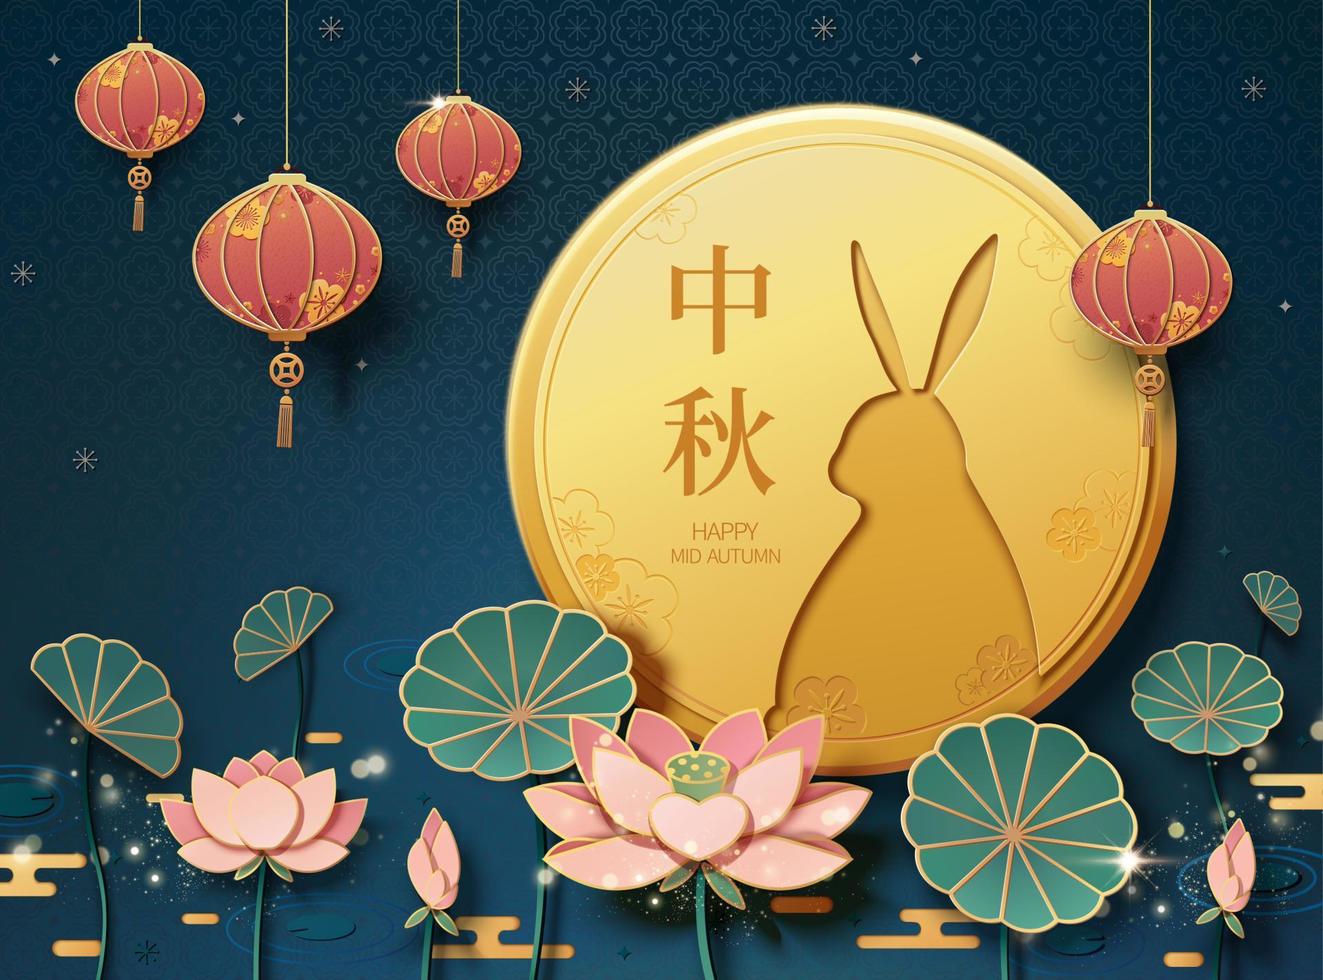 mooi vol maan en lotus vijver met gelukkig midden herfst festival geschreven in Chinese woorden vector